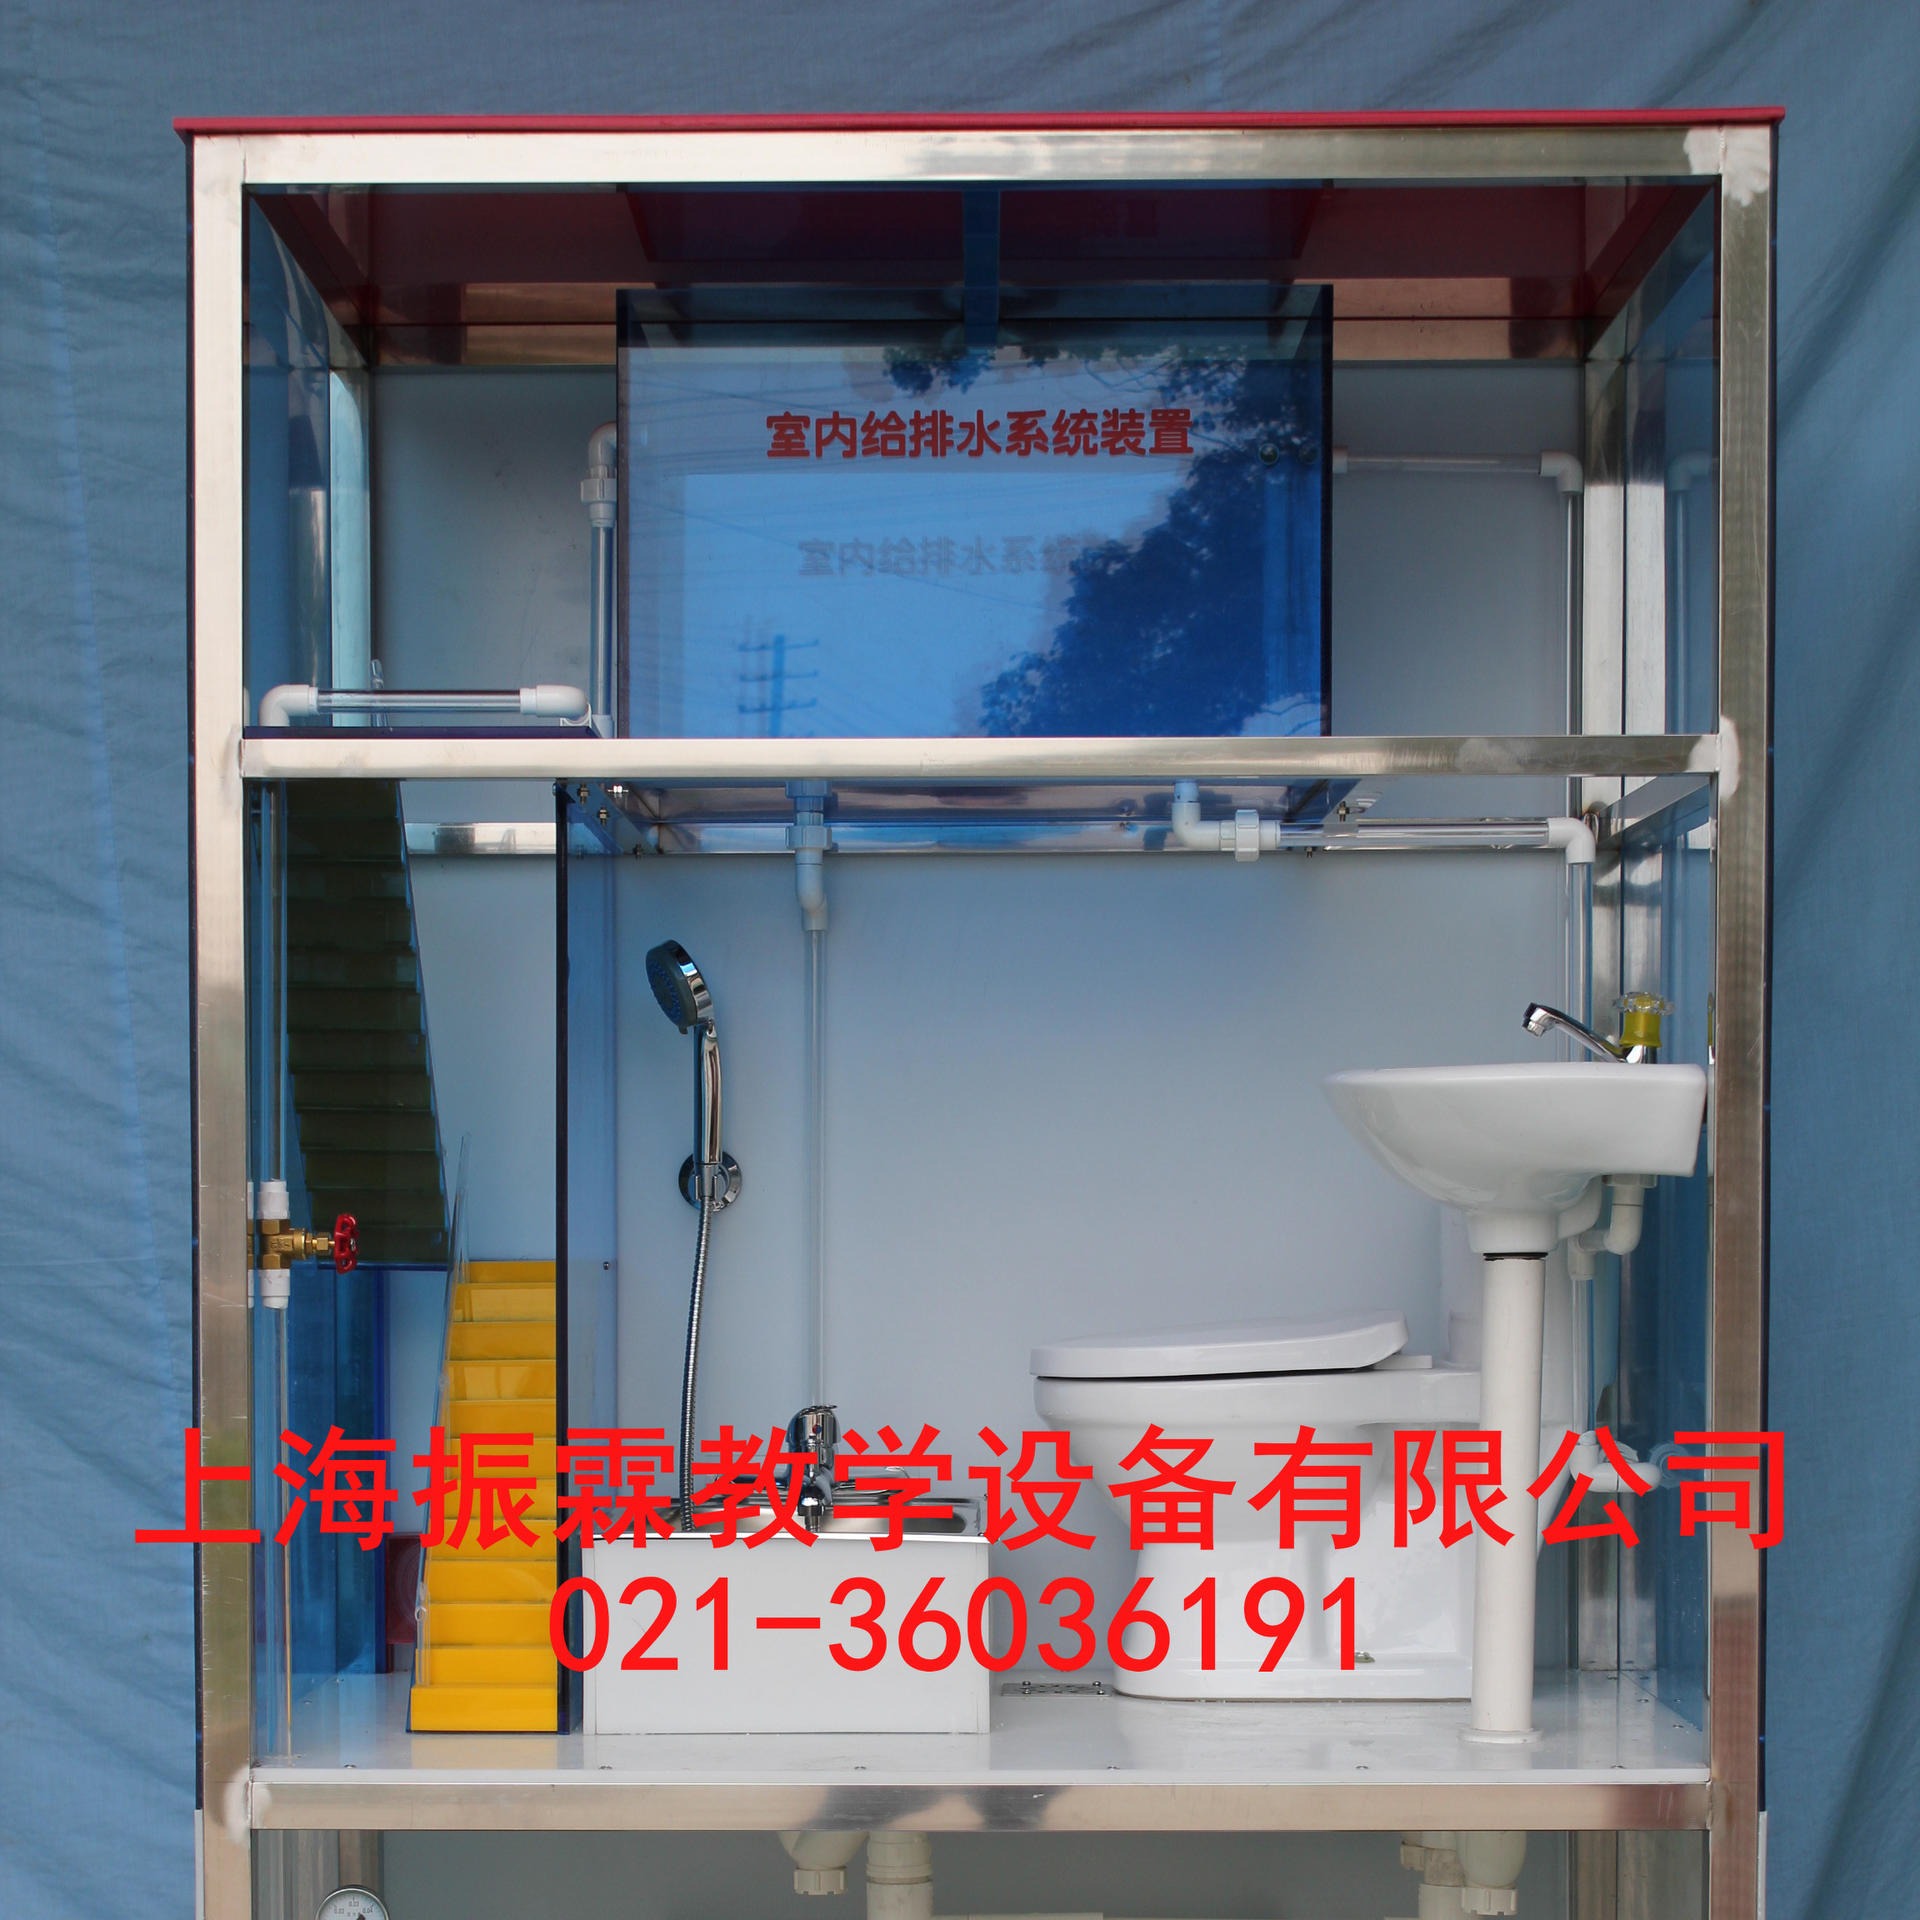 ZLHJ-V212型室内给排水系统 建筑给排水设备 室内给排水综合演示模型 室内排水实训设备  振霖 厂家制造图片